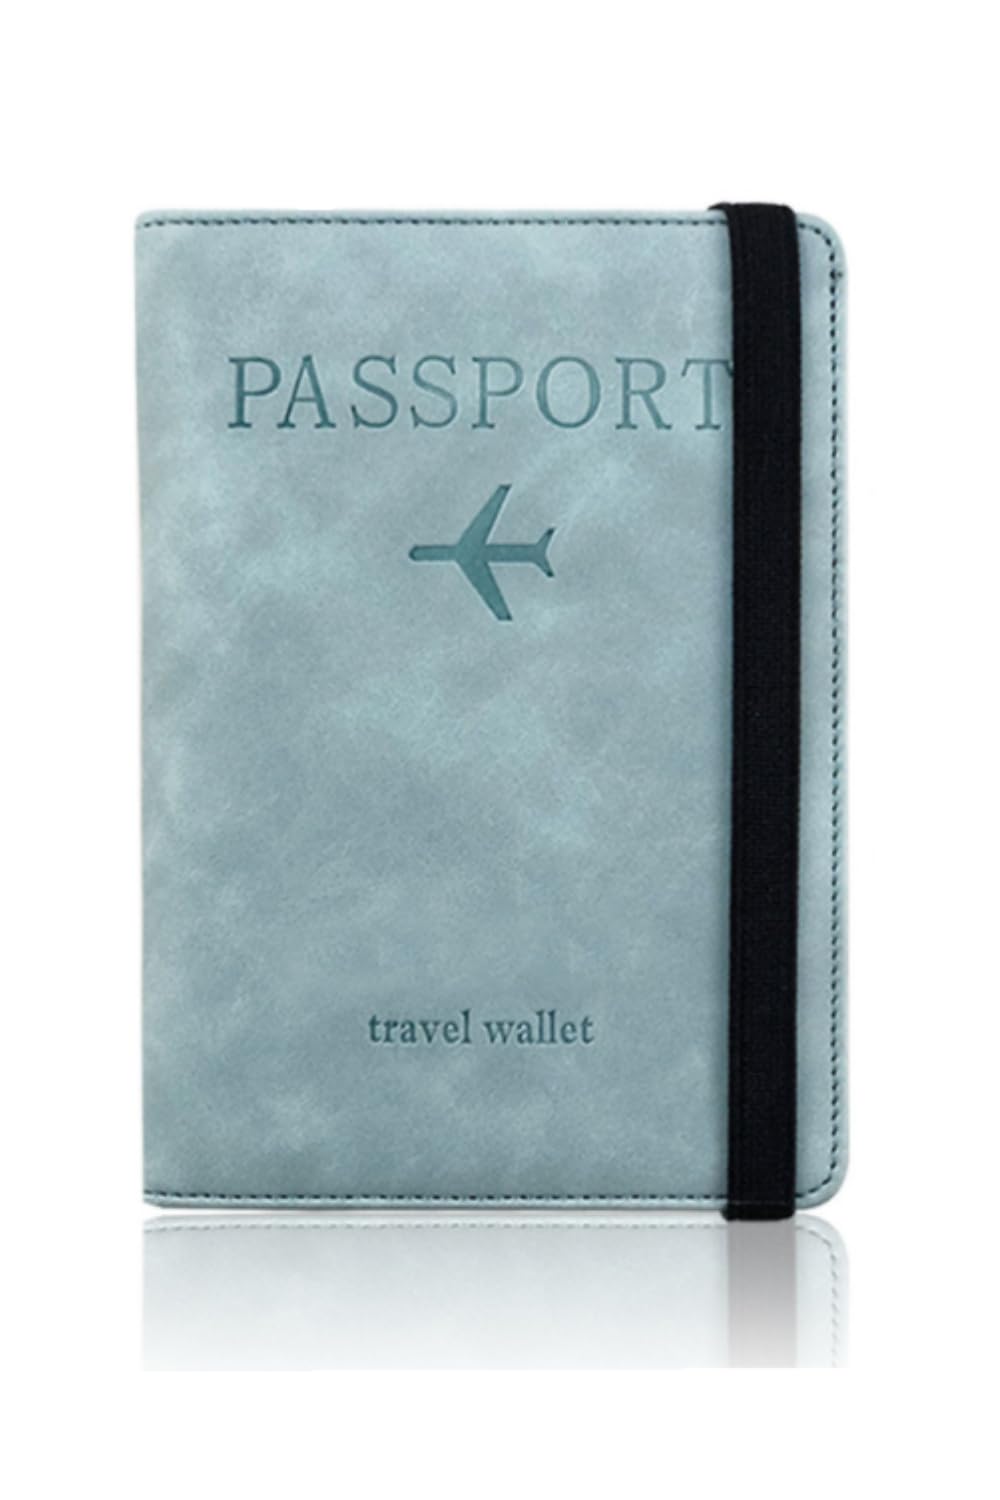 楽天1000カットカルペディエム[YFFSFDC] パスポートケース スキミング防止 パスポートカバー ホルダー トラベルウォレット パスポートカードケース 多機能収納ポケット 国内海外旅行用品 海外出張 海外旅行（ライトブルー）